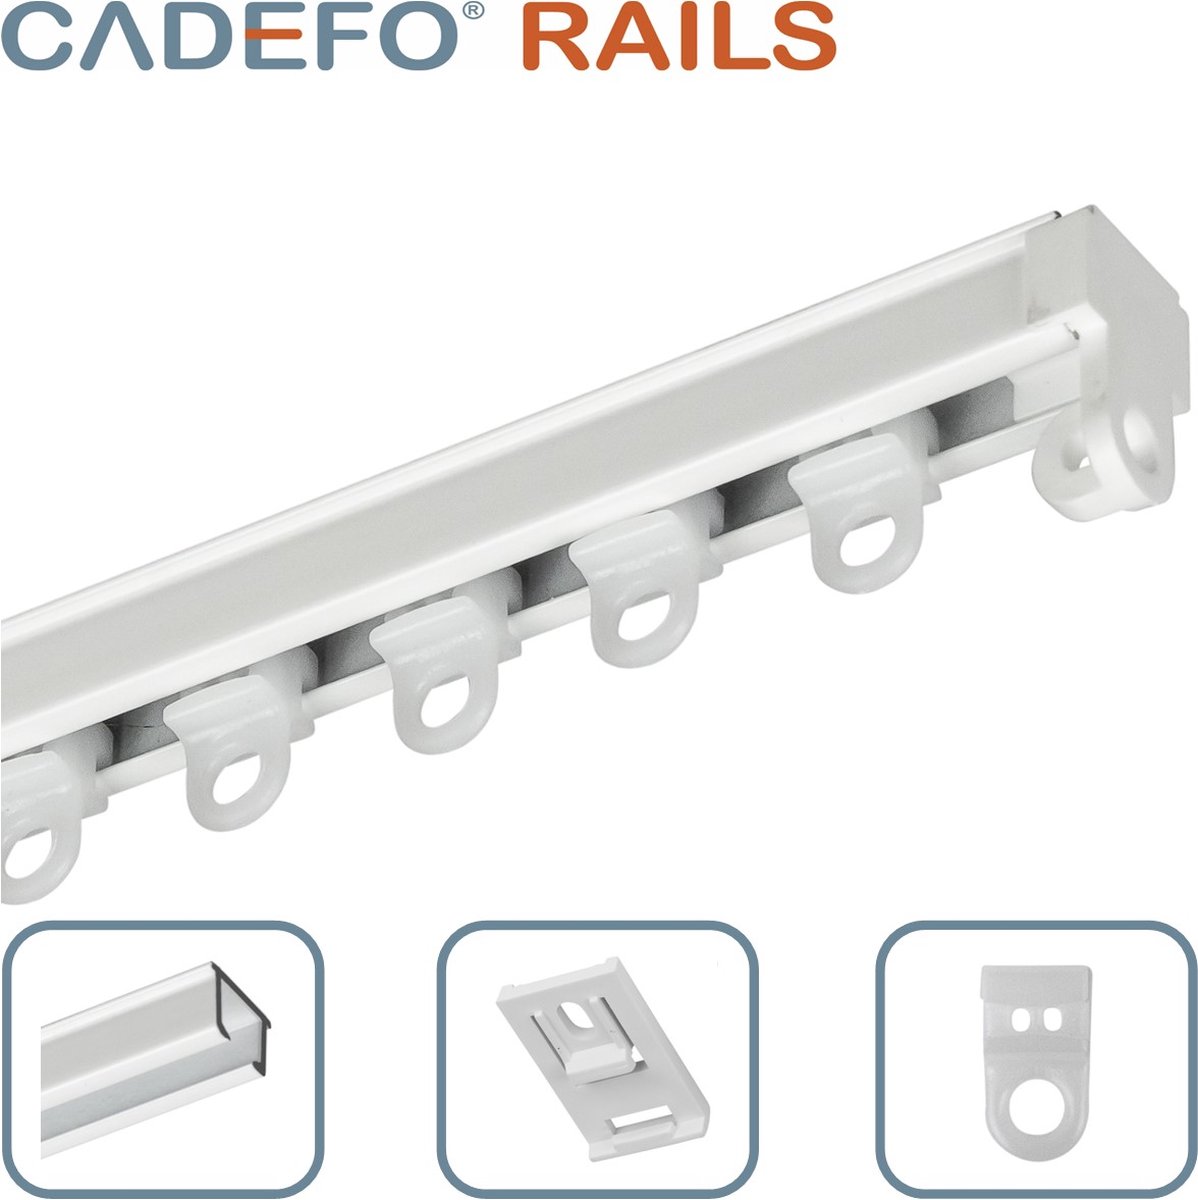 CADEFO RAILS (351 - 400 cm) Gordijnrails - Compleet op maat! - UIT 1 STUK - Leverbaar tot 6 meter - Plafondbevestiging - Lengte 356 cm